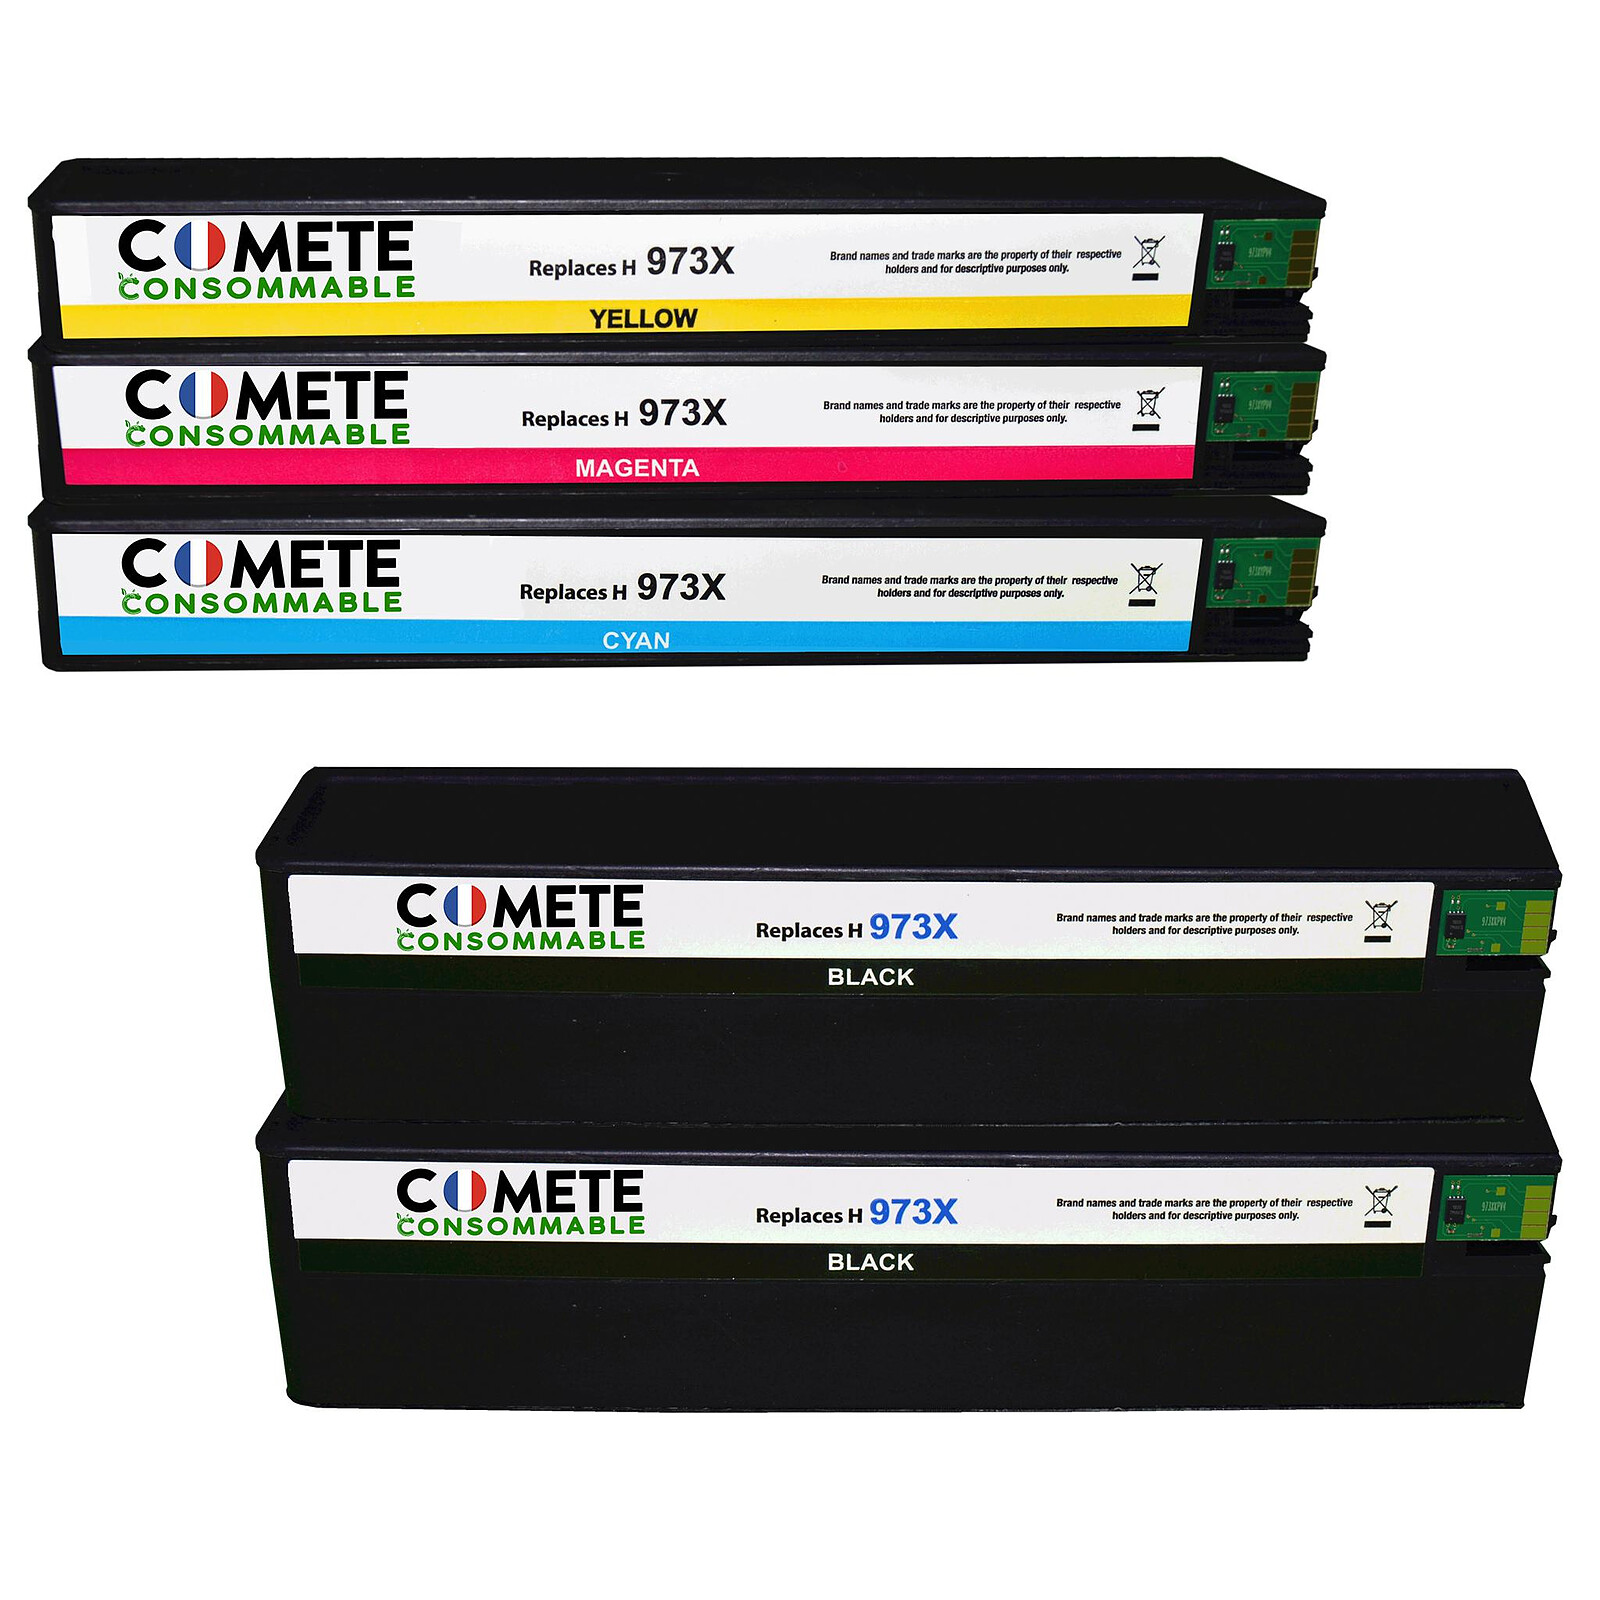 COMETE - 364XL - 4 Cartouches compatibles HP 364XL - Noir et Couleur -  Marque française - Cartouche imprimante - LDLC